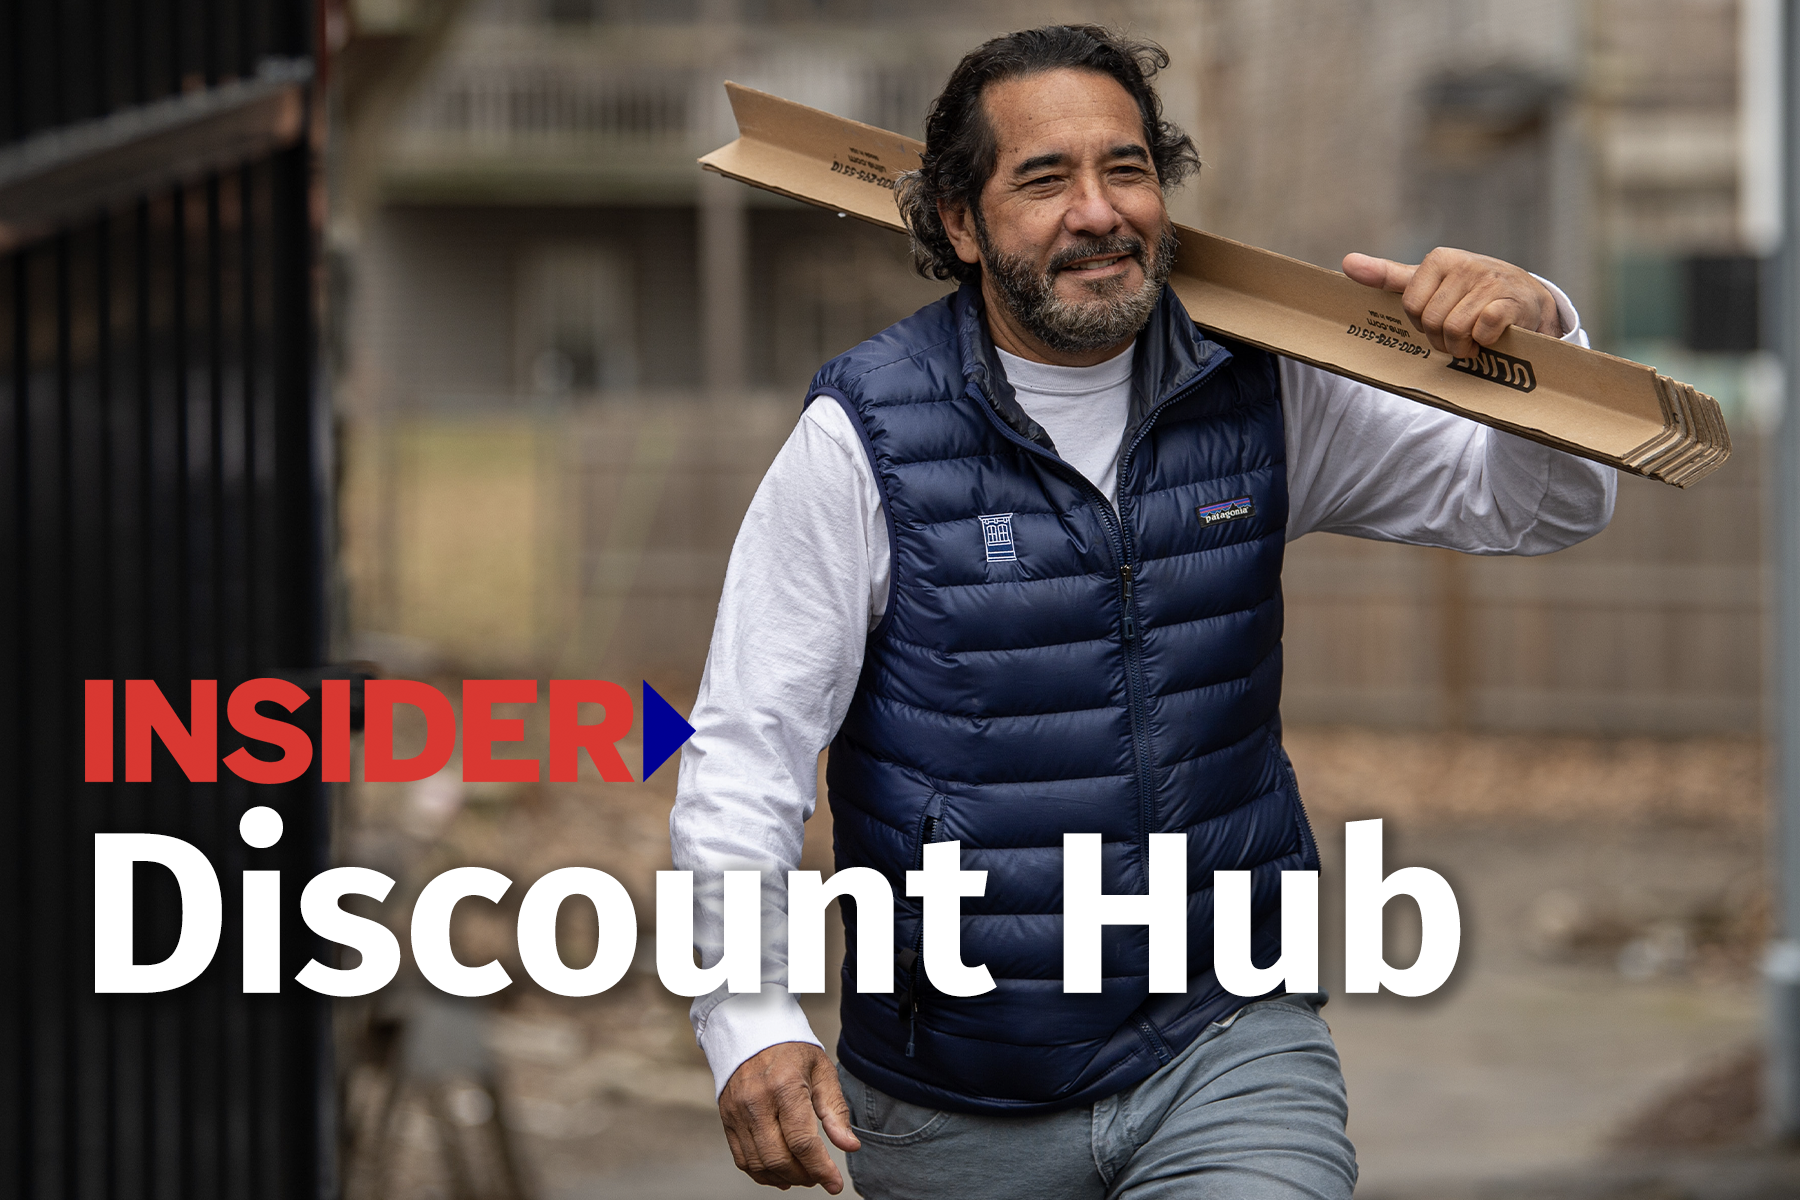 Insider Discount Hub website tout